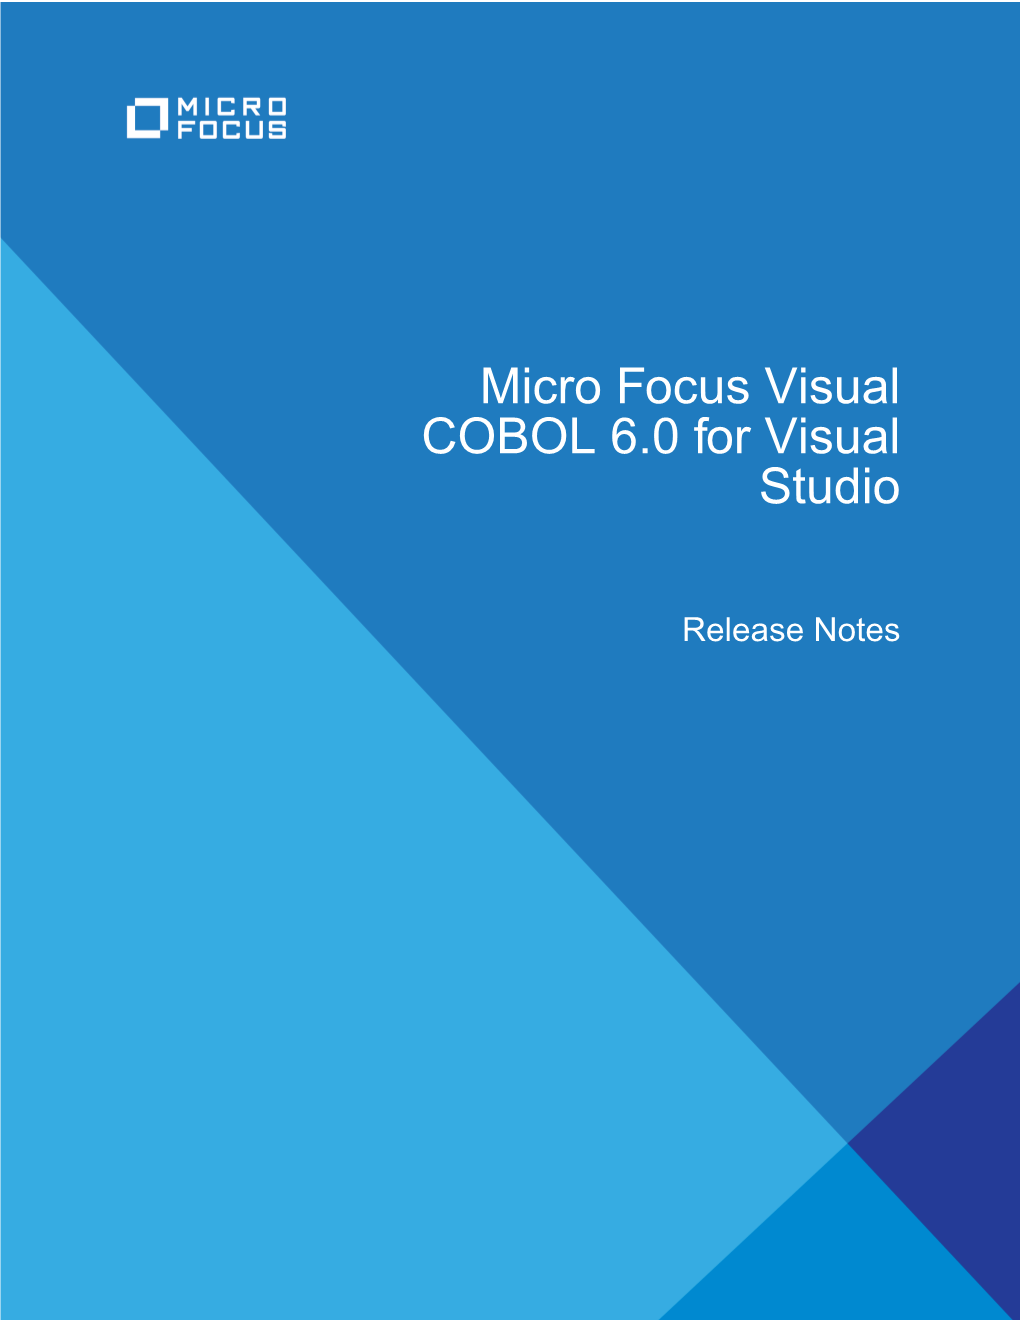 Micro Focus Visual COBOL 6.0 for Visual Studio